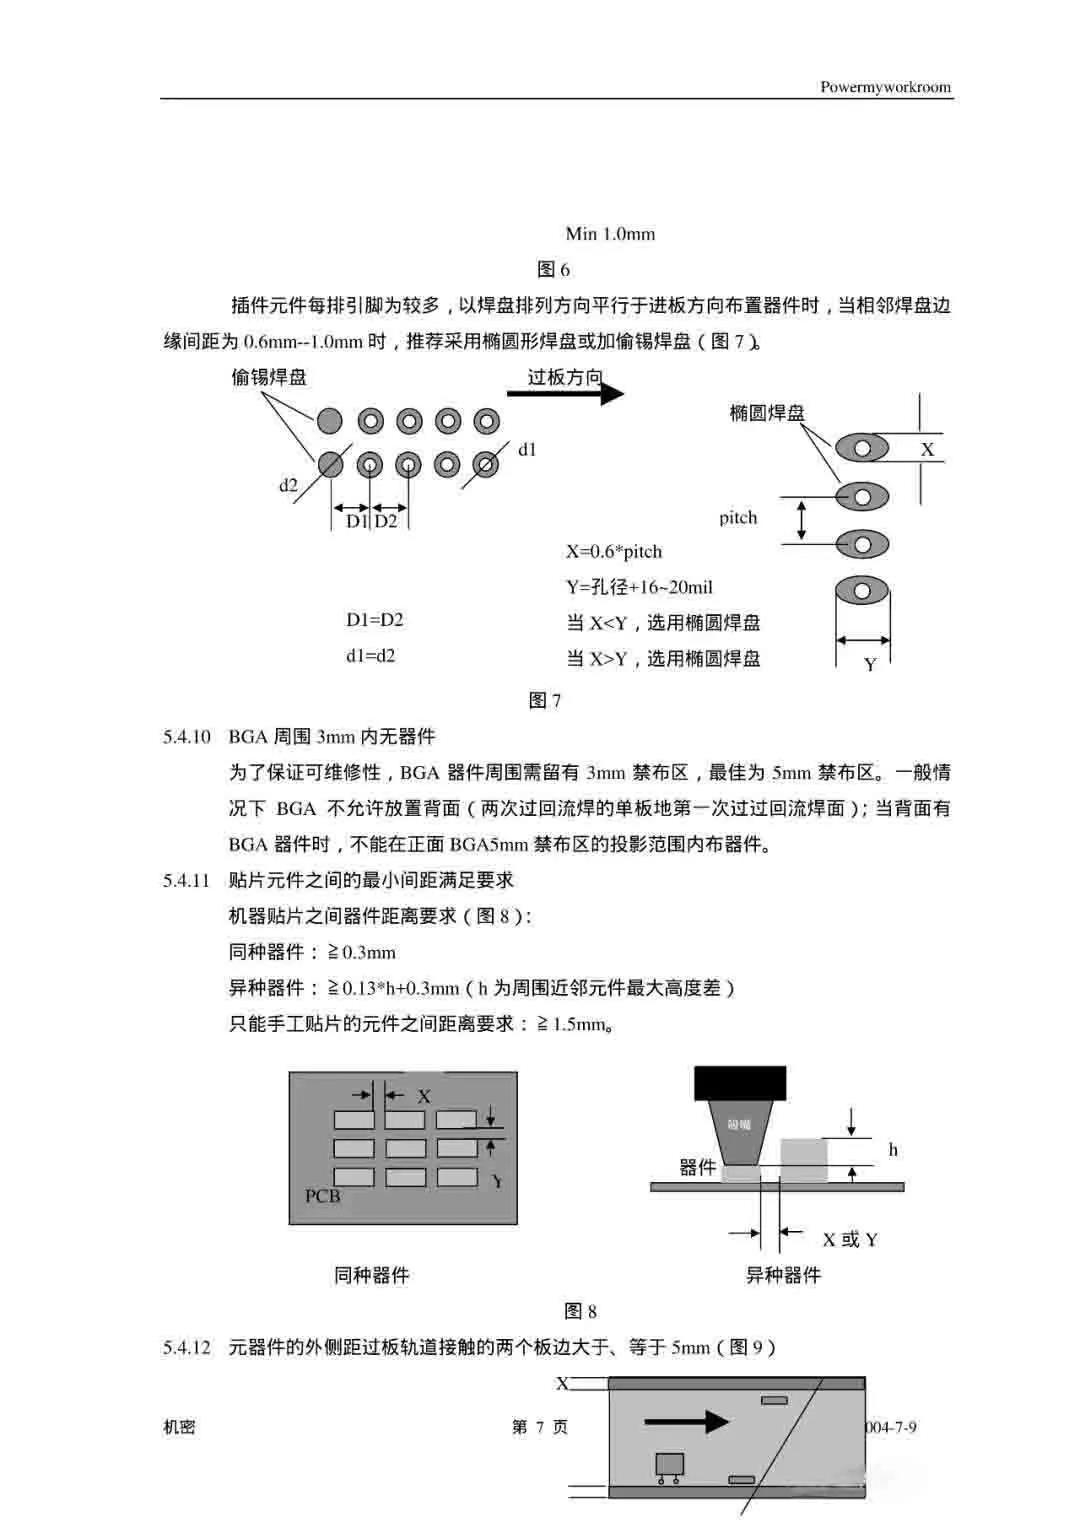 PCB 工艺设计规范(图7)